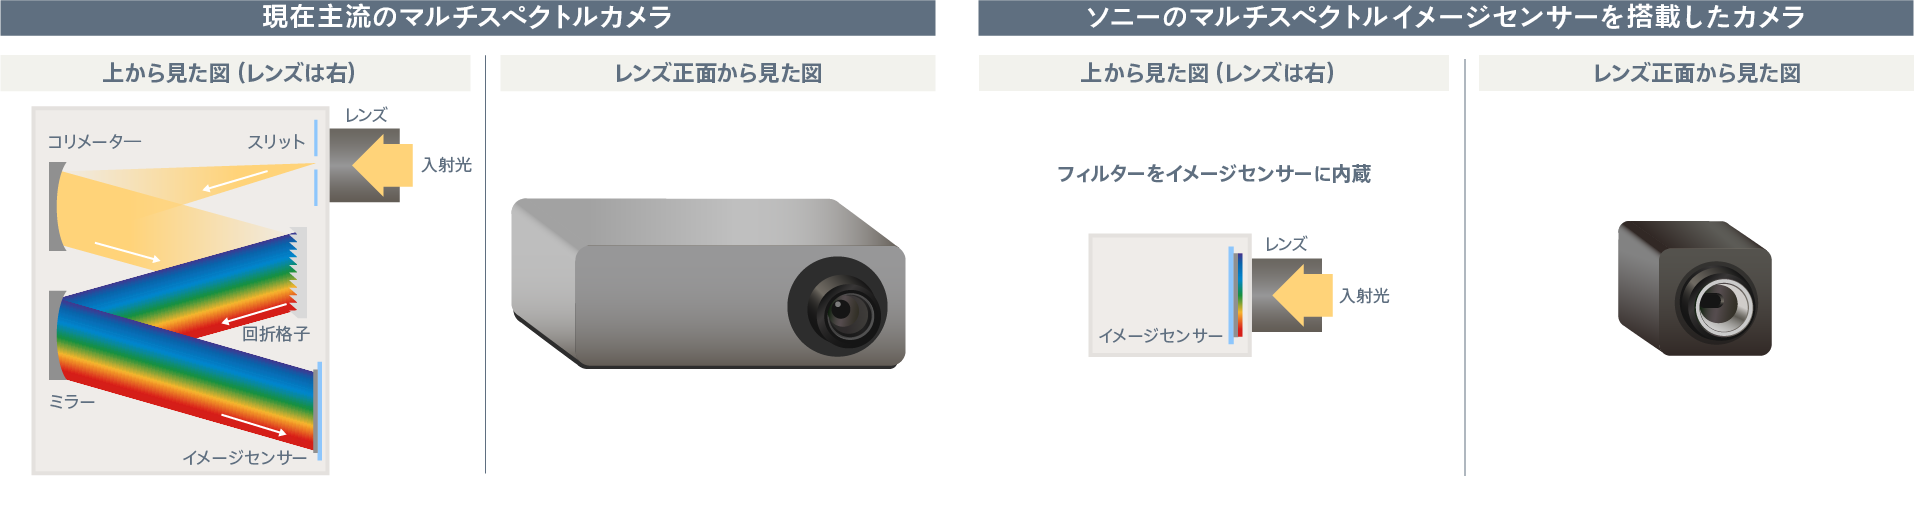 現在主流のマルチスペクトルカメラとソニーのマルチスペクトルイメージセンサーを搭載したカメラの比較図